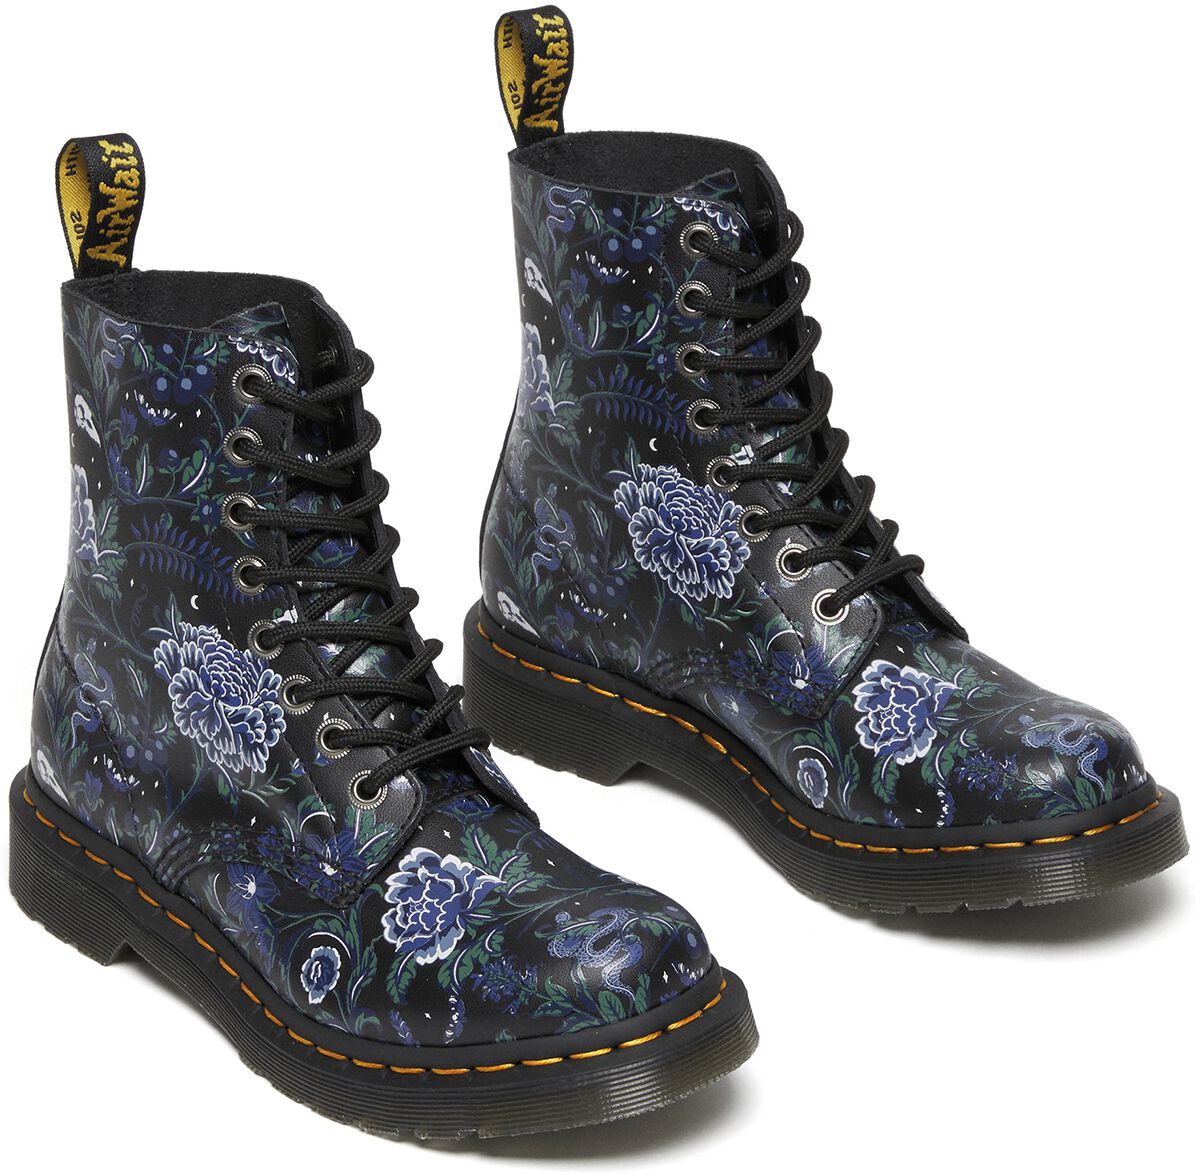 Dr. Martens 1460 Pascal - Mystic Garden Floral Black Backhand Boot multicolour